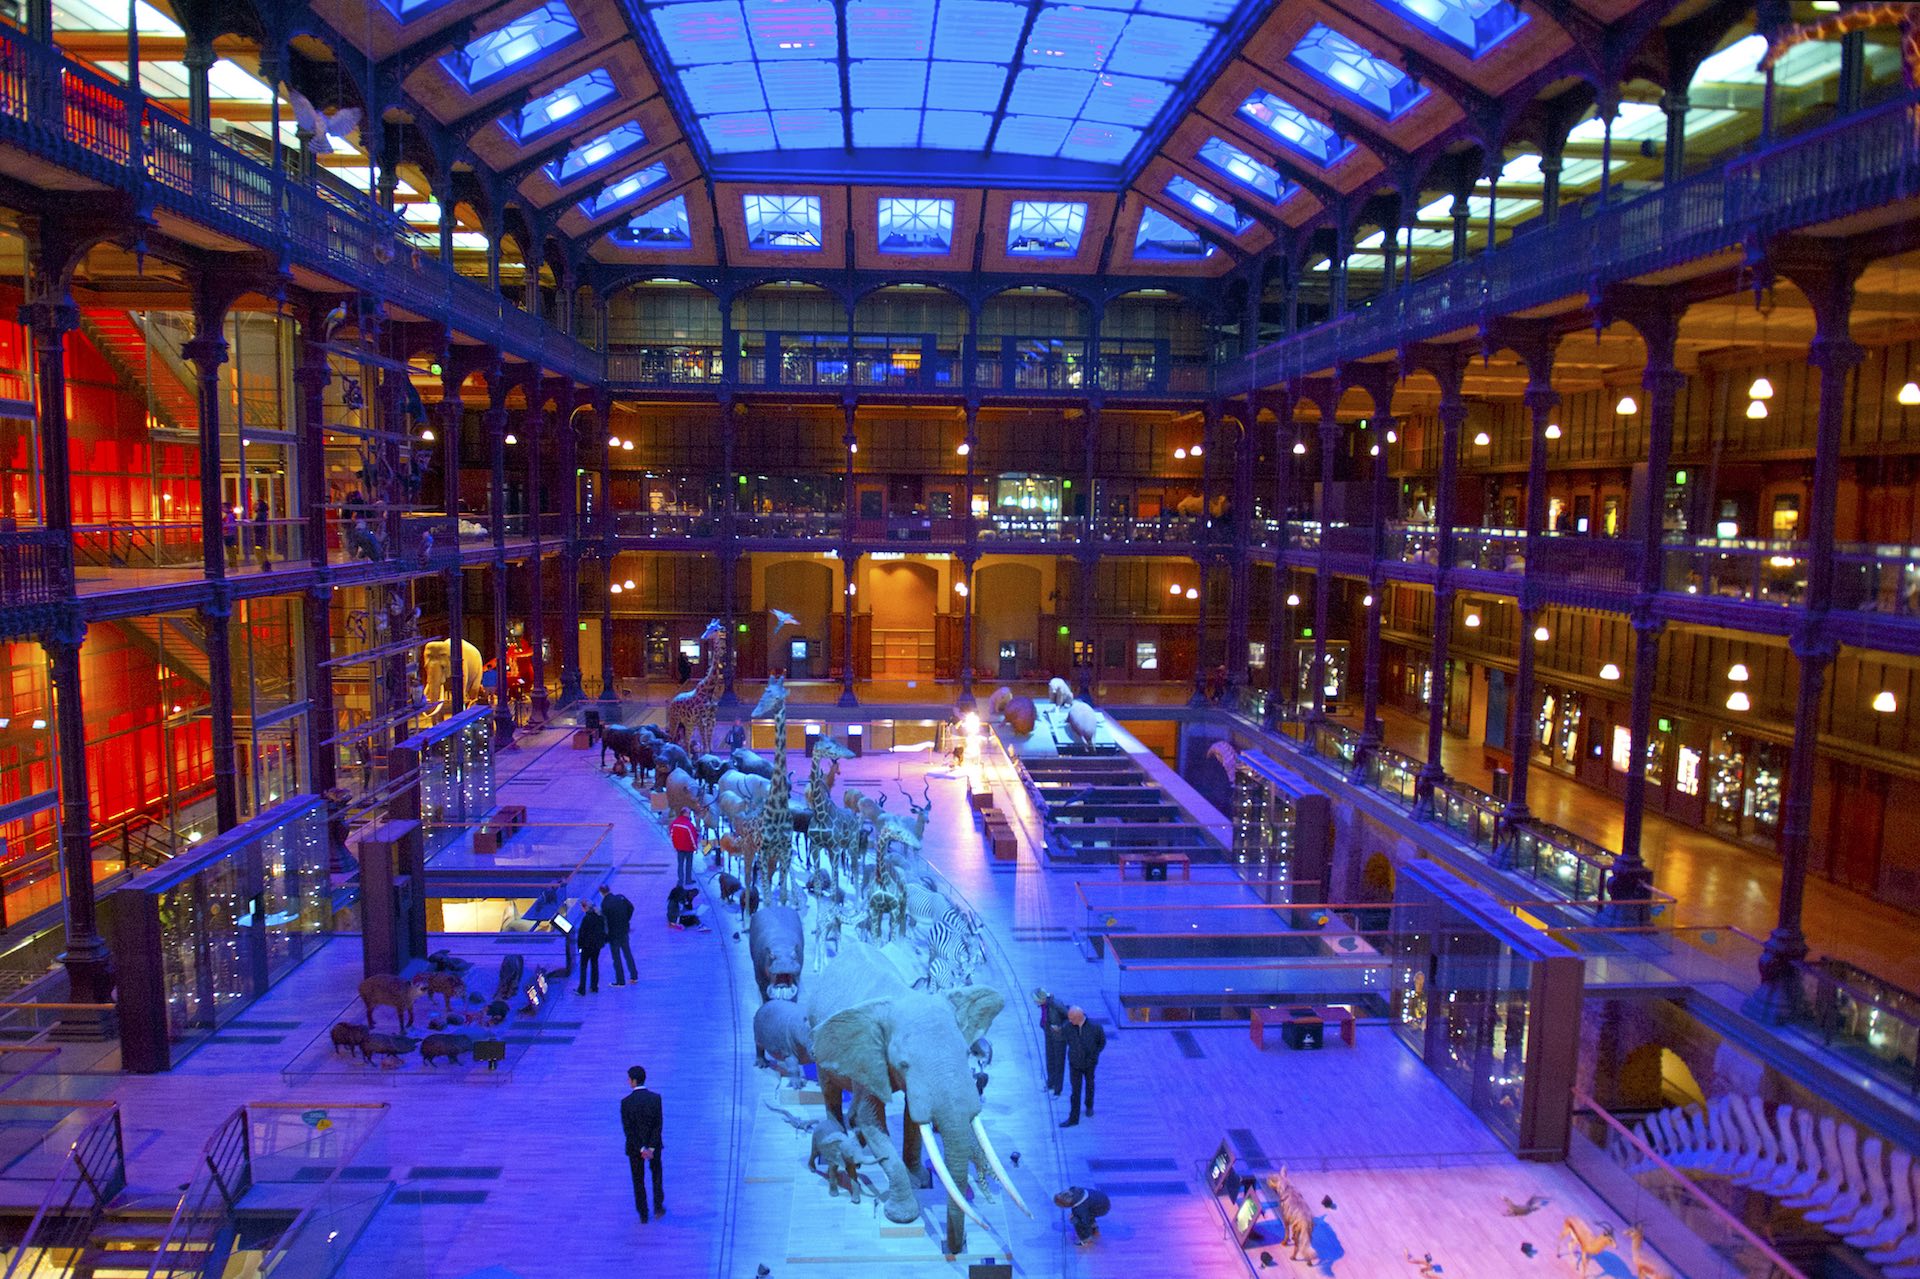 Paris Musee de l'Evolution